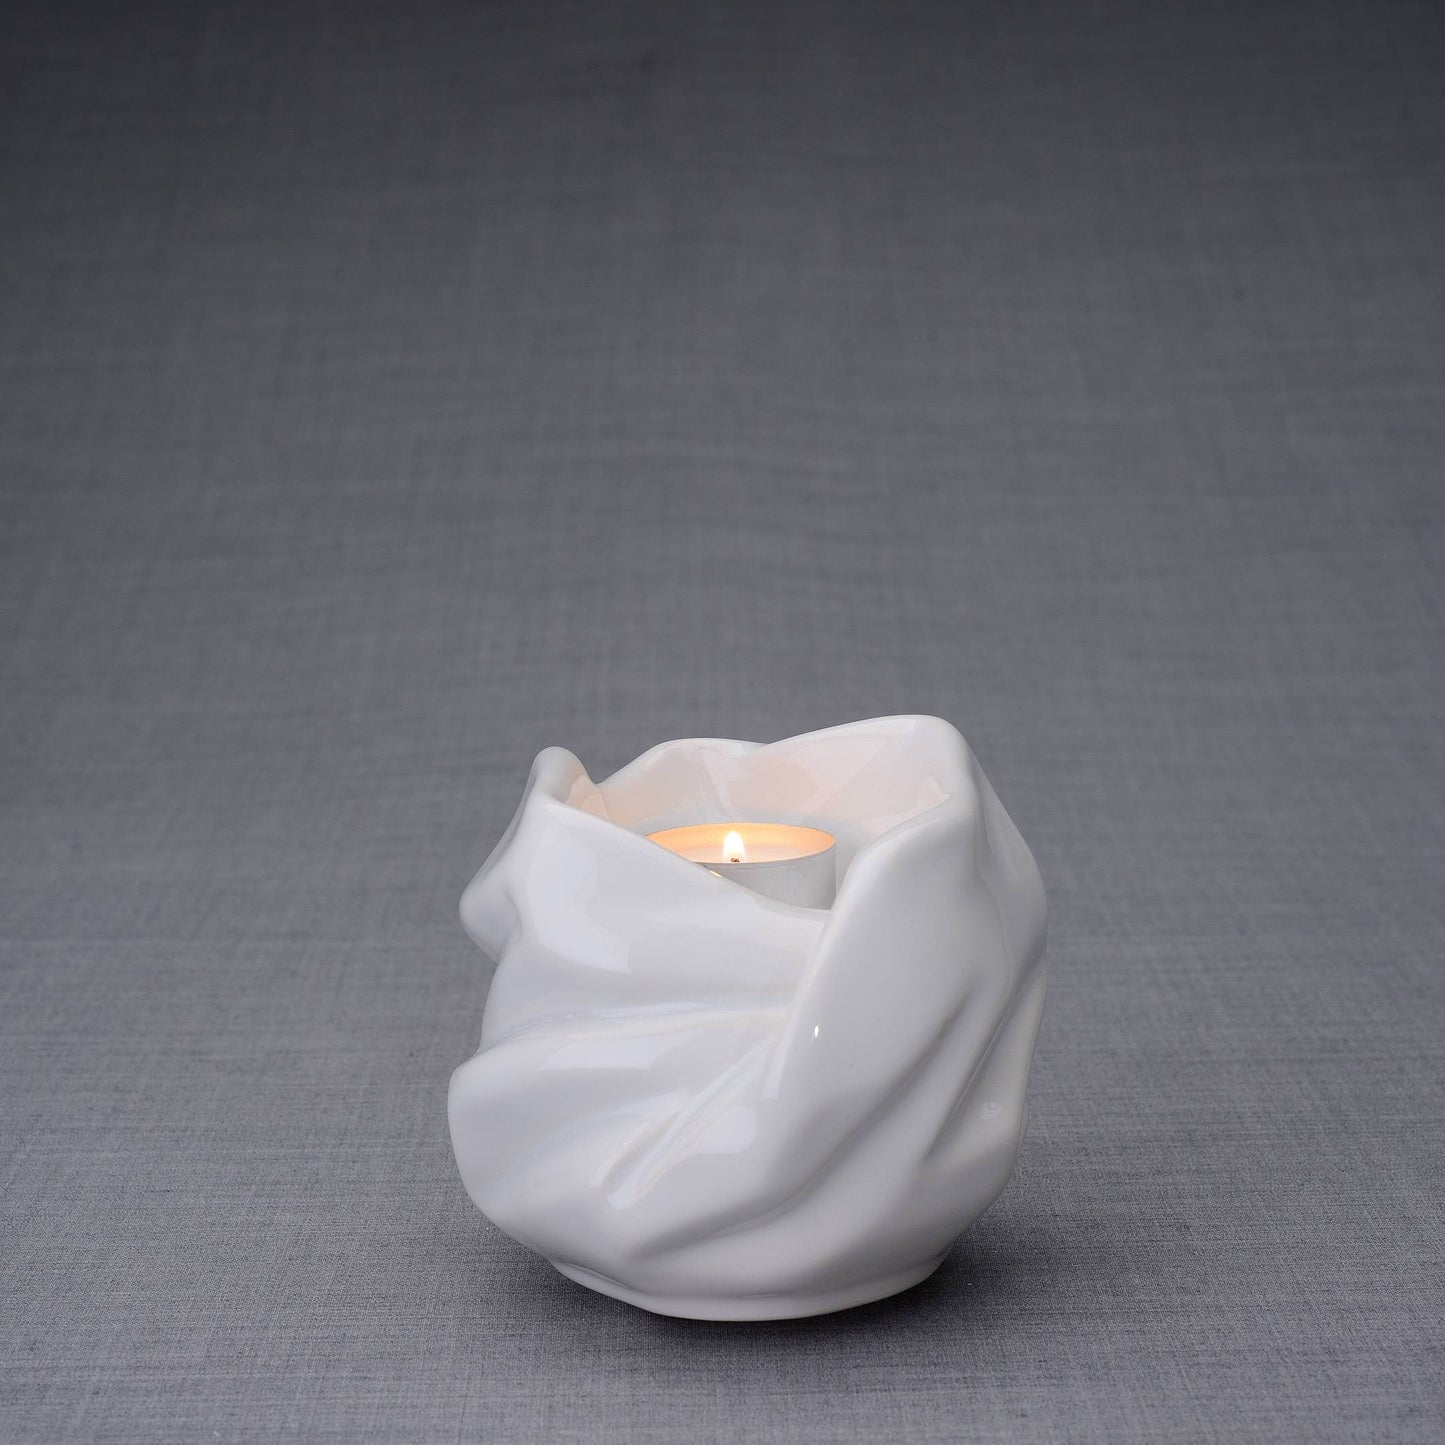 The Holy Mother Handmade Keepsake Cremation Urn for Ashes, color White, Candle-holder-PulvisArtUrns-Pulvis Art Urns